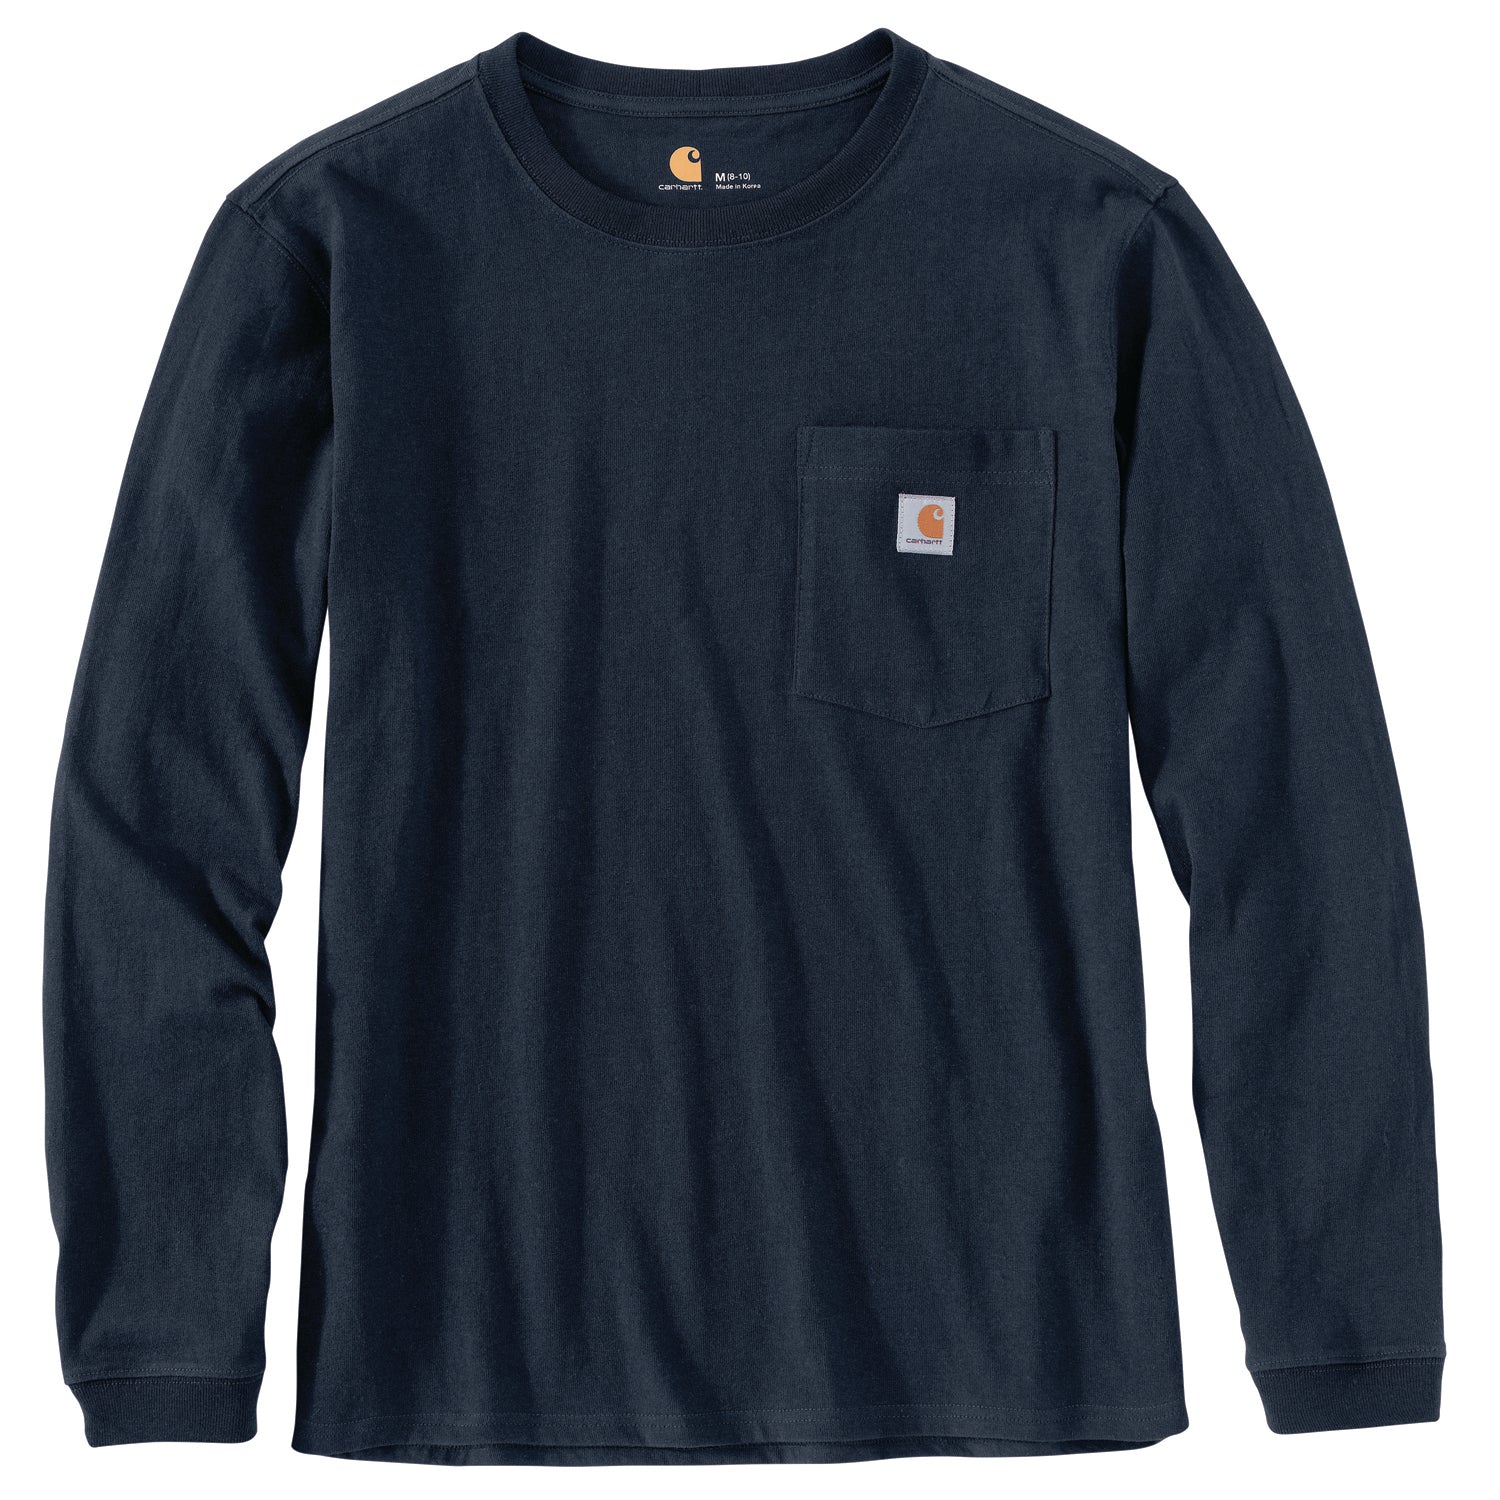 Carhartt Women's Long Sleeved Workwear T-shirt 103244 – Good's